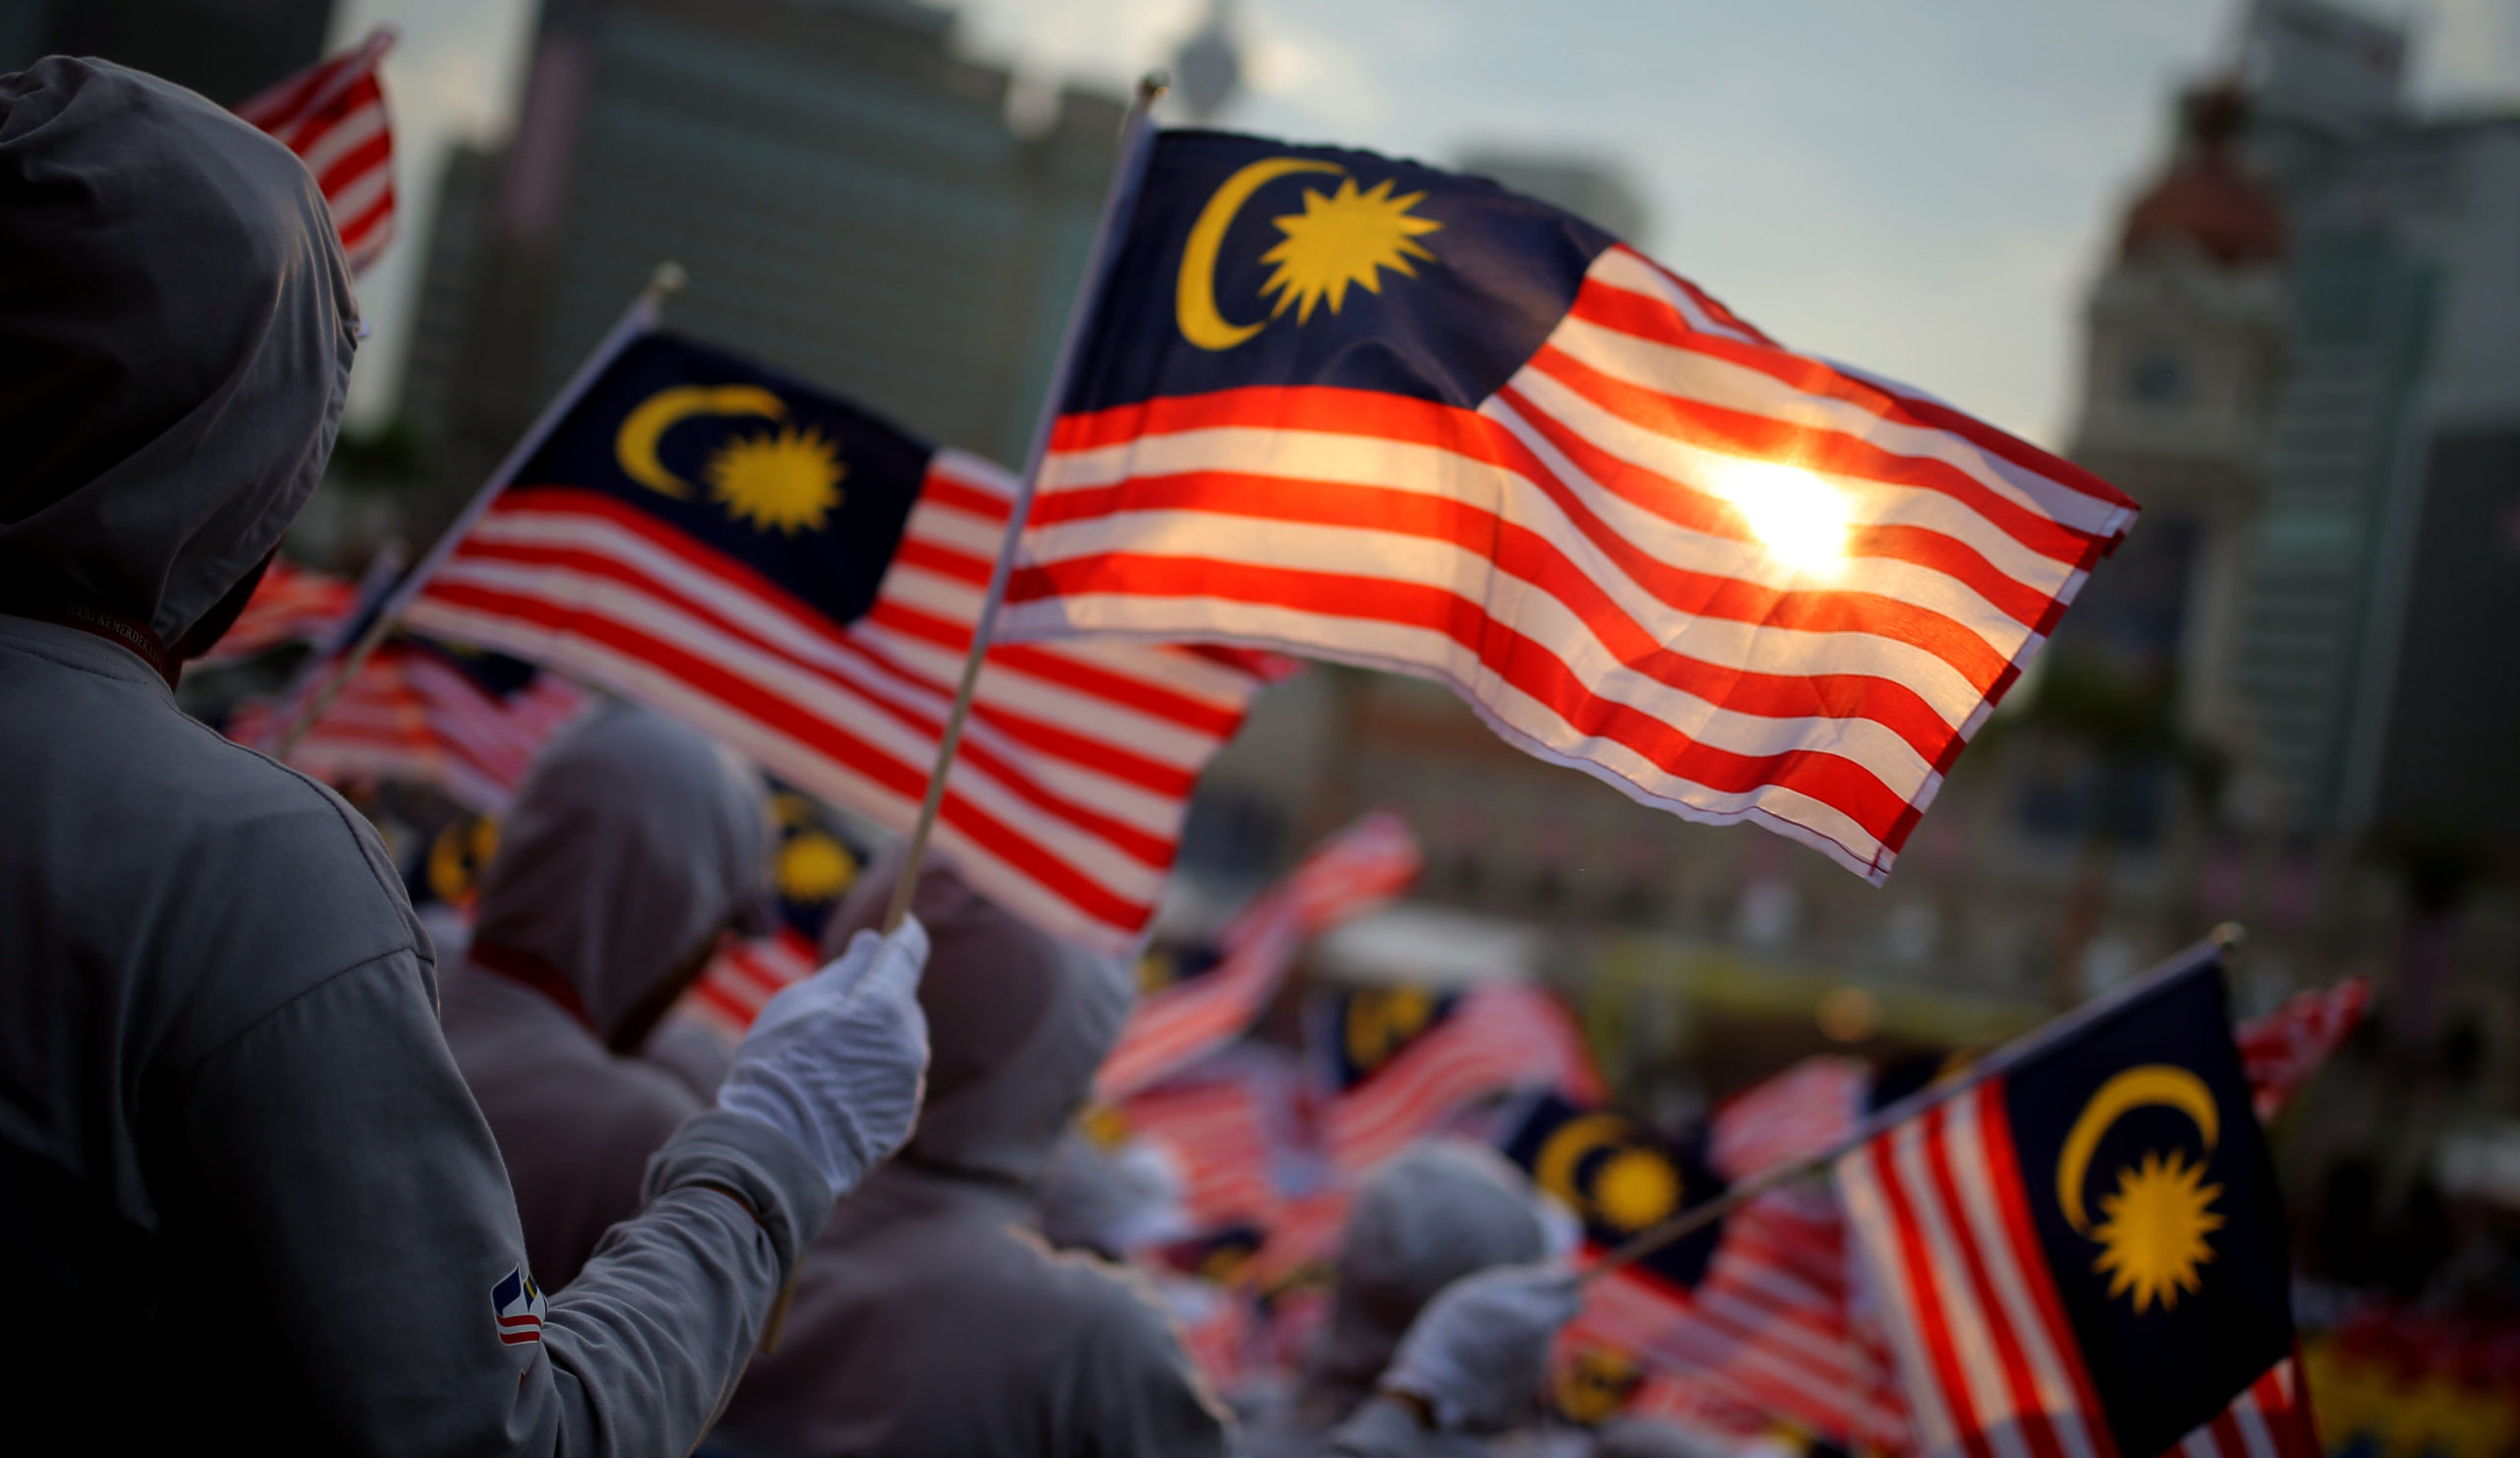 People at a Merdeka parade waving the Malaysian flag